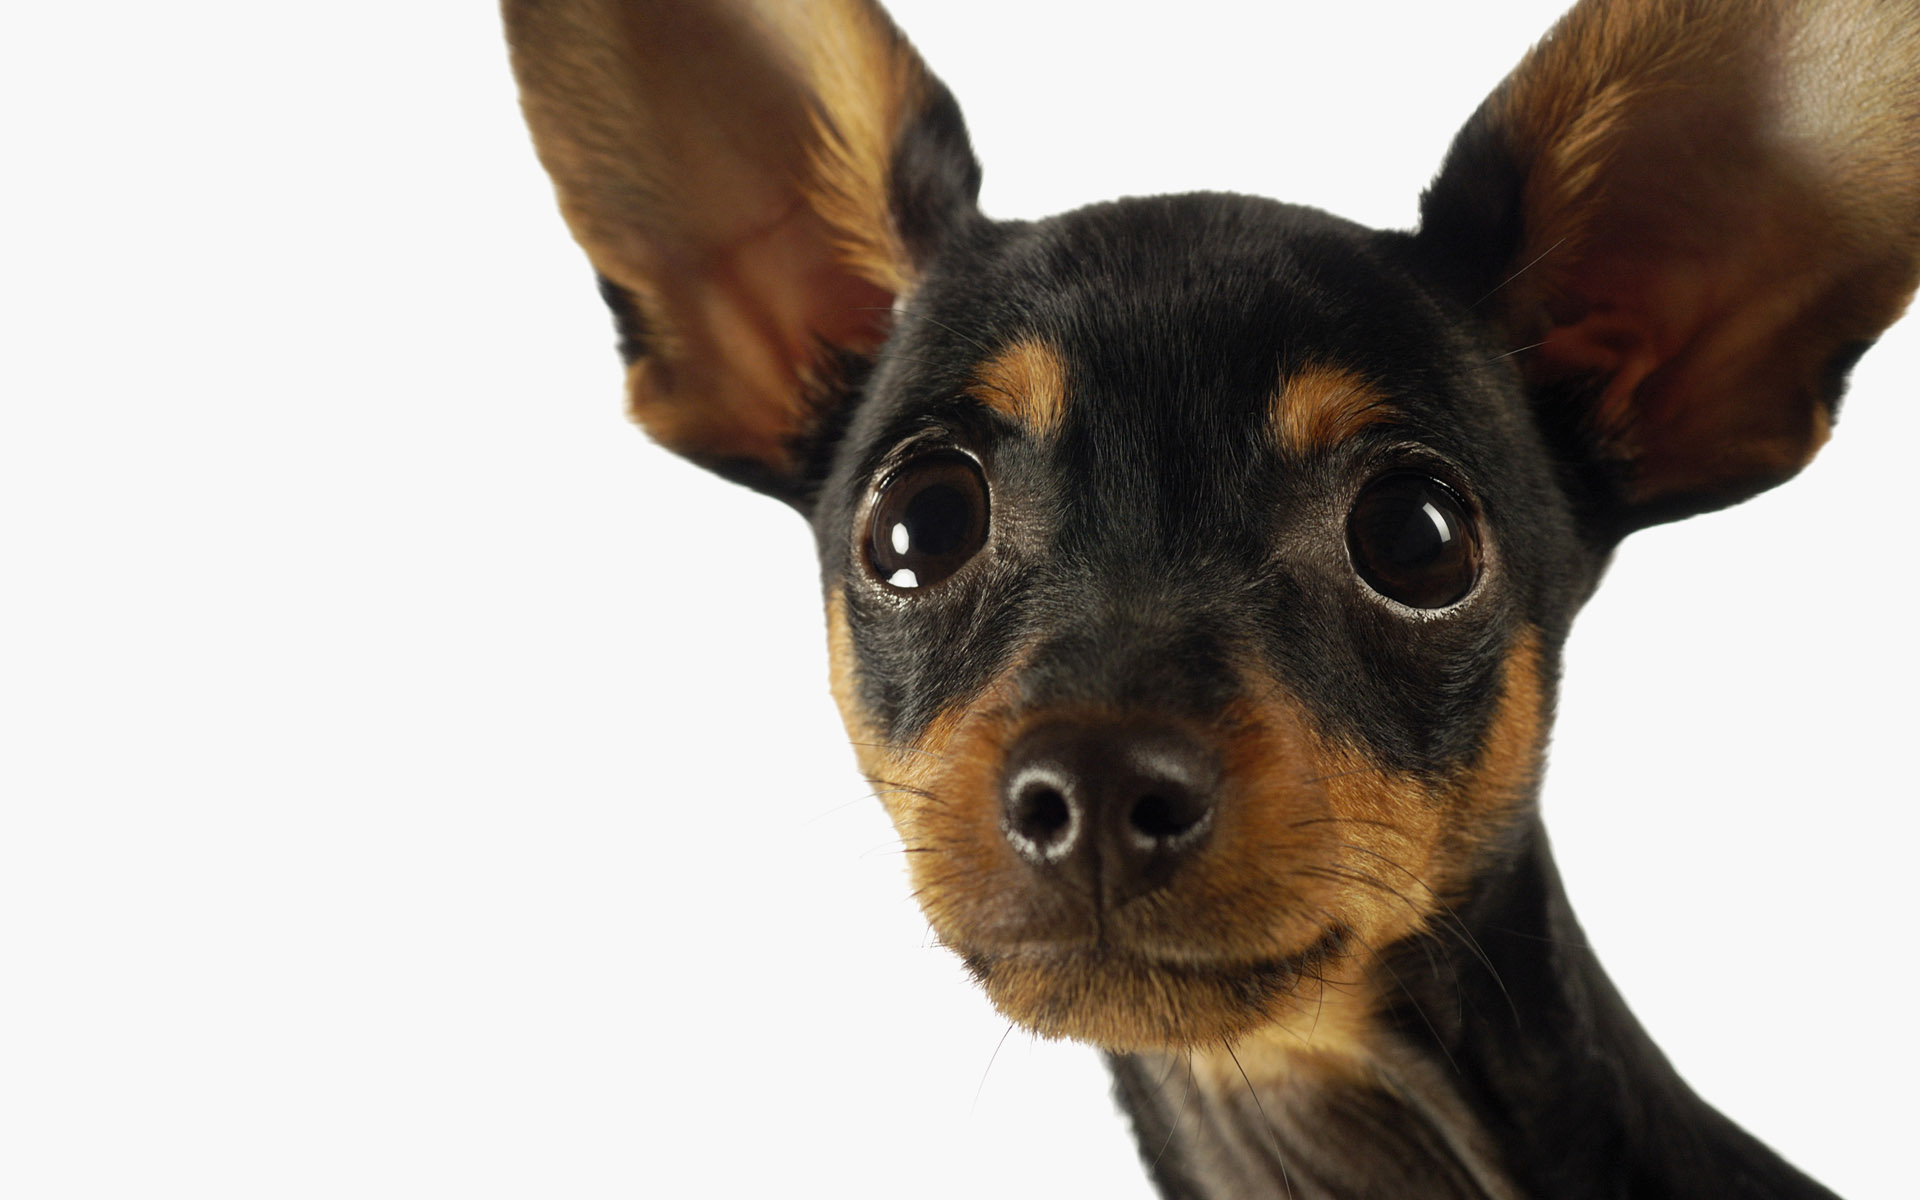 Descarga gratuita de fondo de pantalla para móvil de Perros, Perro, Animales.